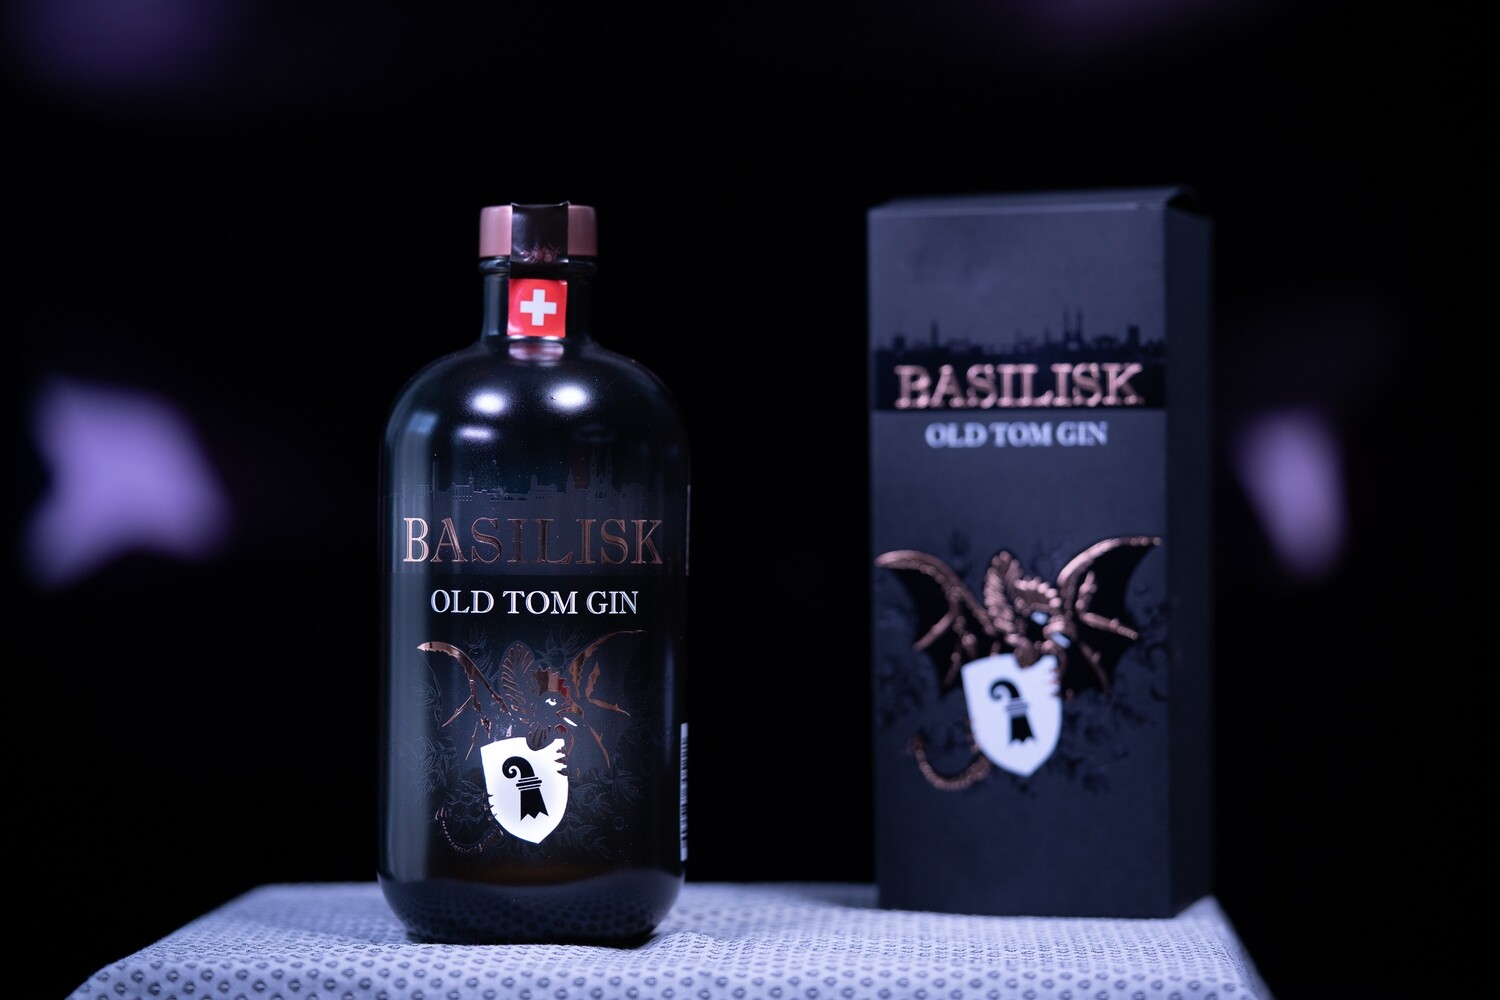 Basilisk Old Tom​ Gin